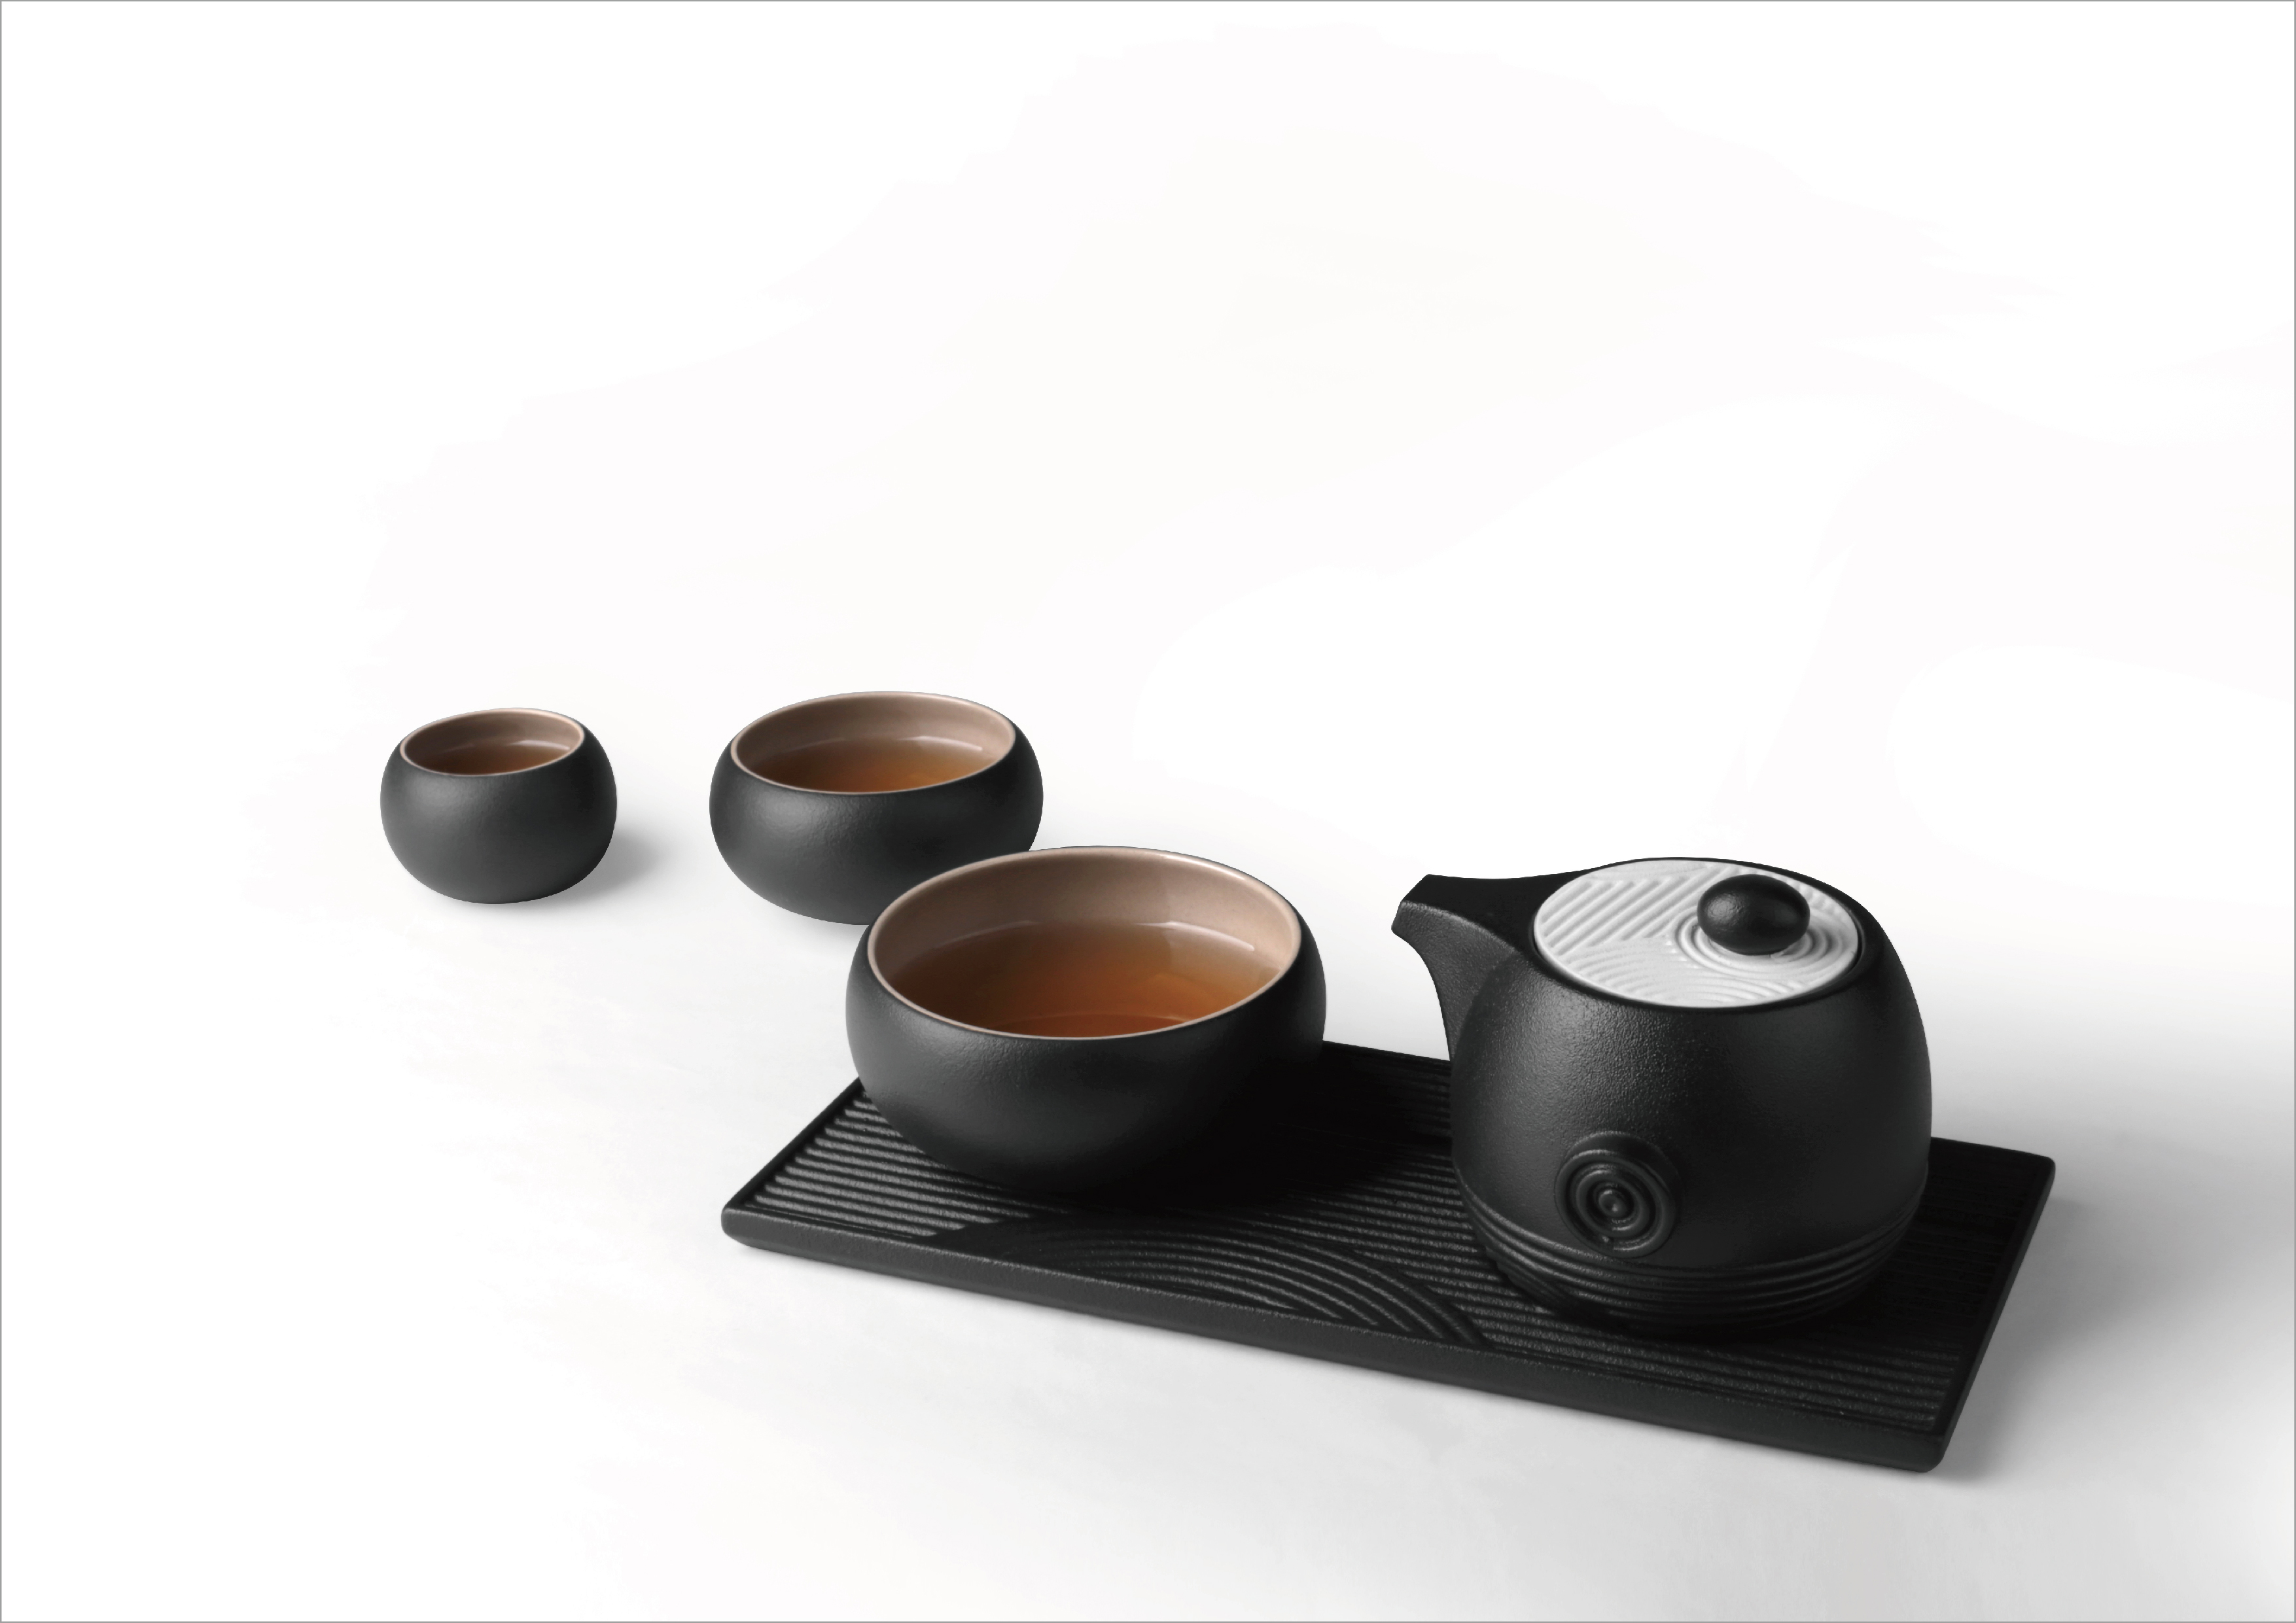 The Swirl-Zen Garden tea set